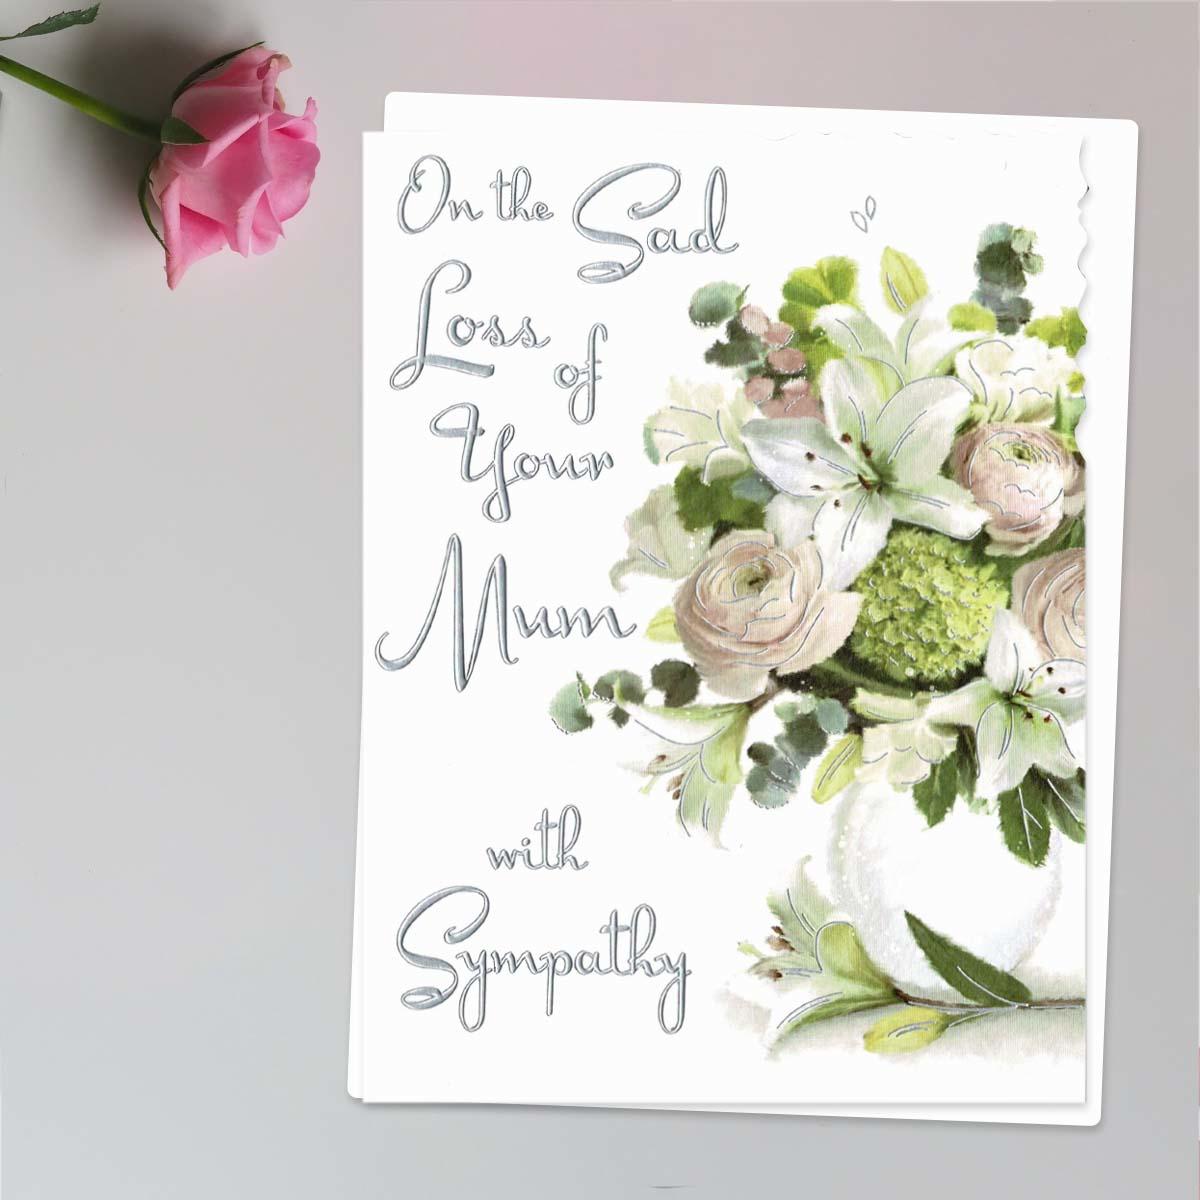 Sympathy - Sad Loss Of Mum Card Front Image